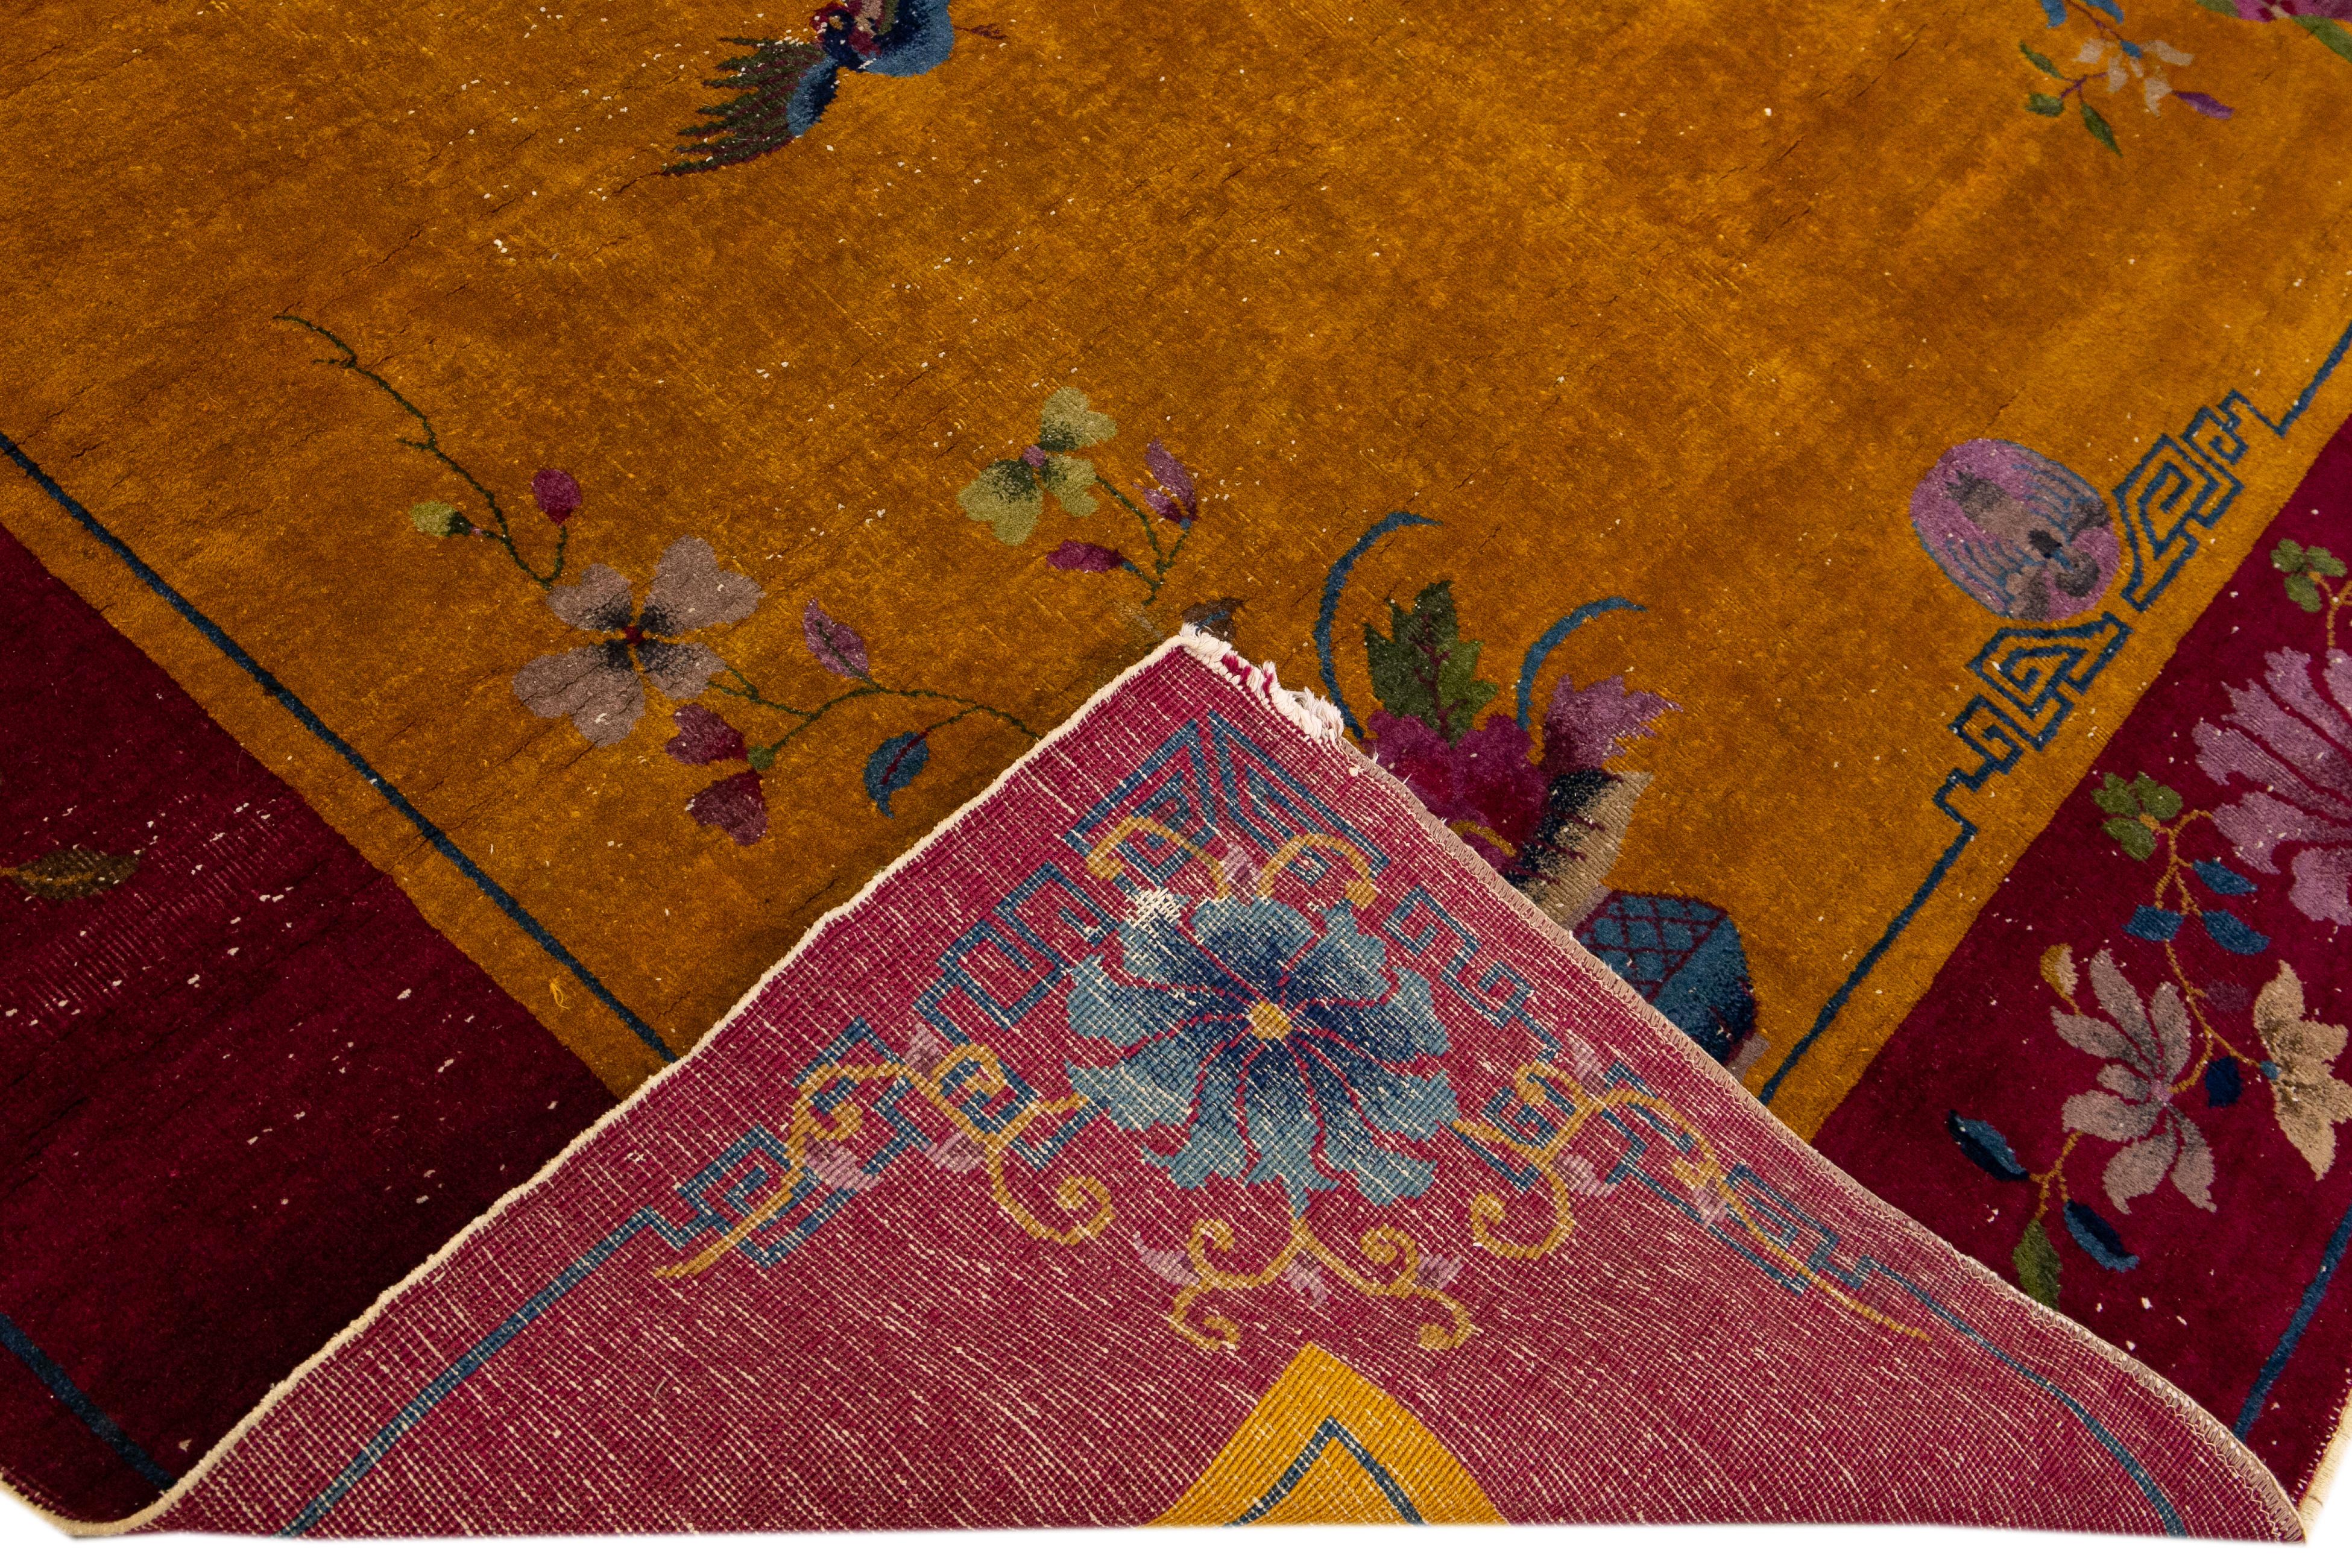 Schöner antiker chinesischer Art-Déco-Teppich aus handgeknüpfter Wolle mit einem gelben Feld. Dieser chinesische Teppich hat einen burgunderroten Rahmen mit mehrfarbigen Akzenten in einem wunderschönen, traditionellen chinesischen Blumenmuster.